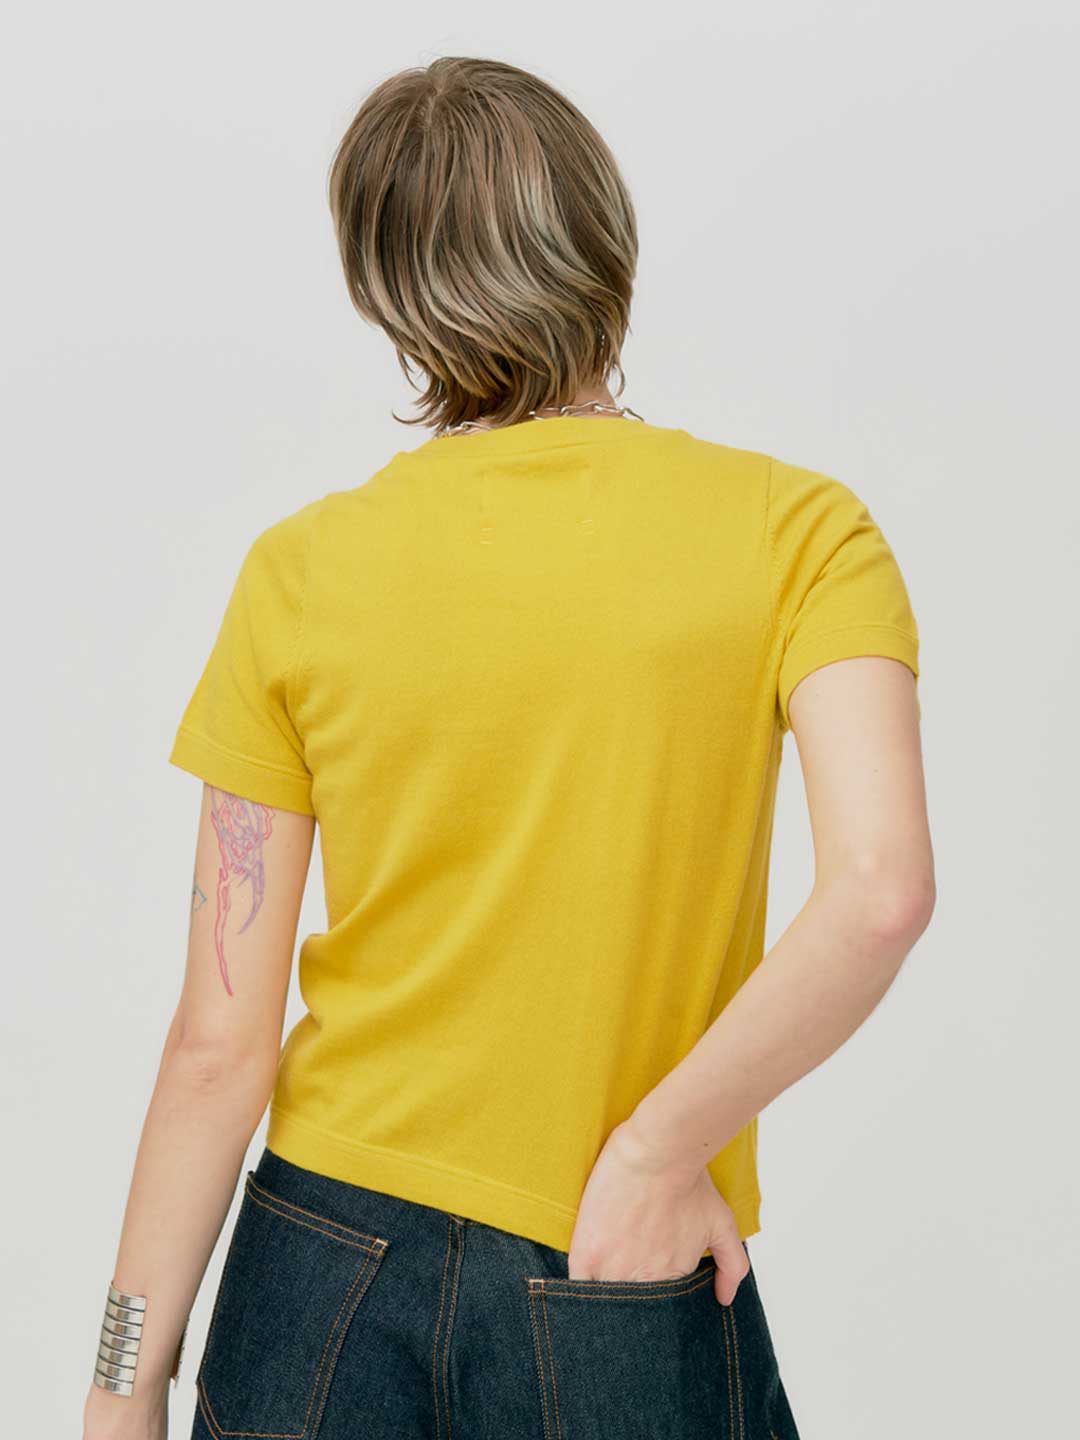 Tina Knit - Yellow